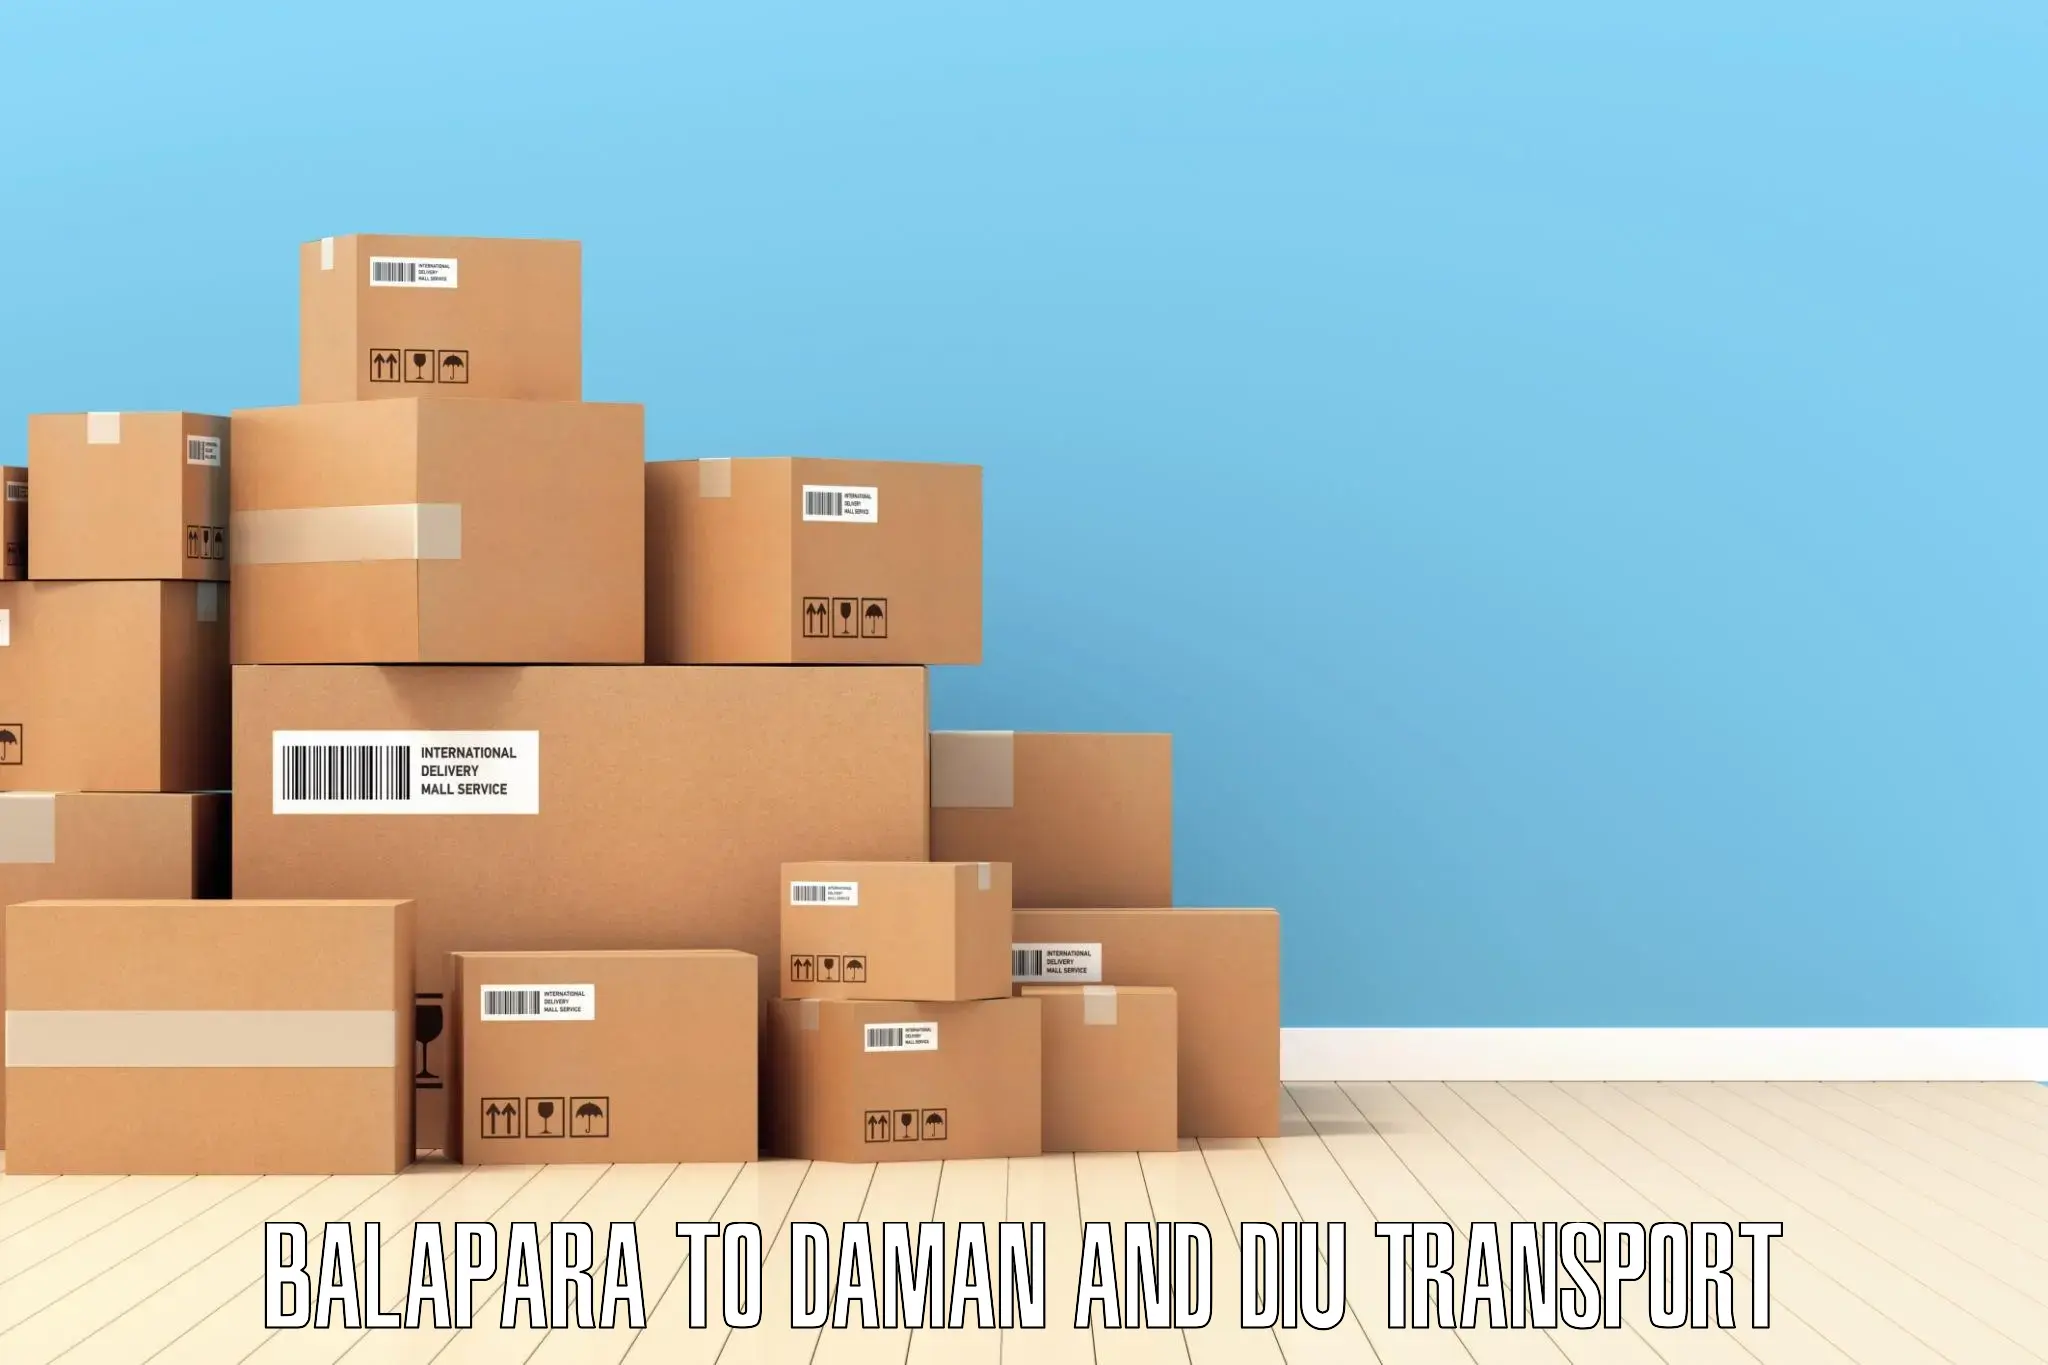 Air freight transport services Balapara to Daman